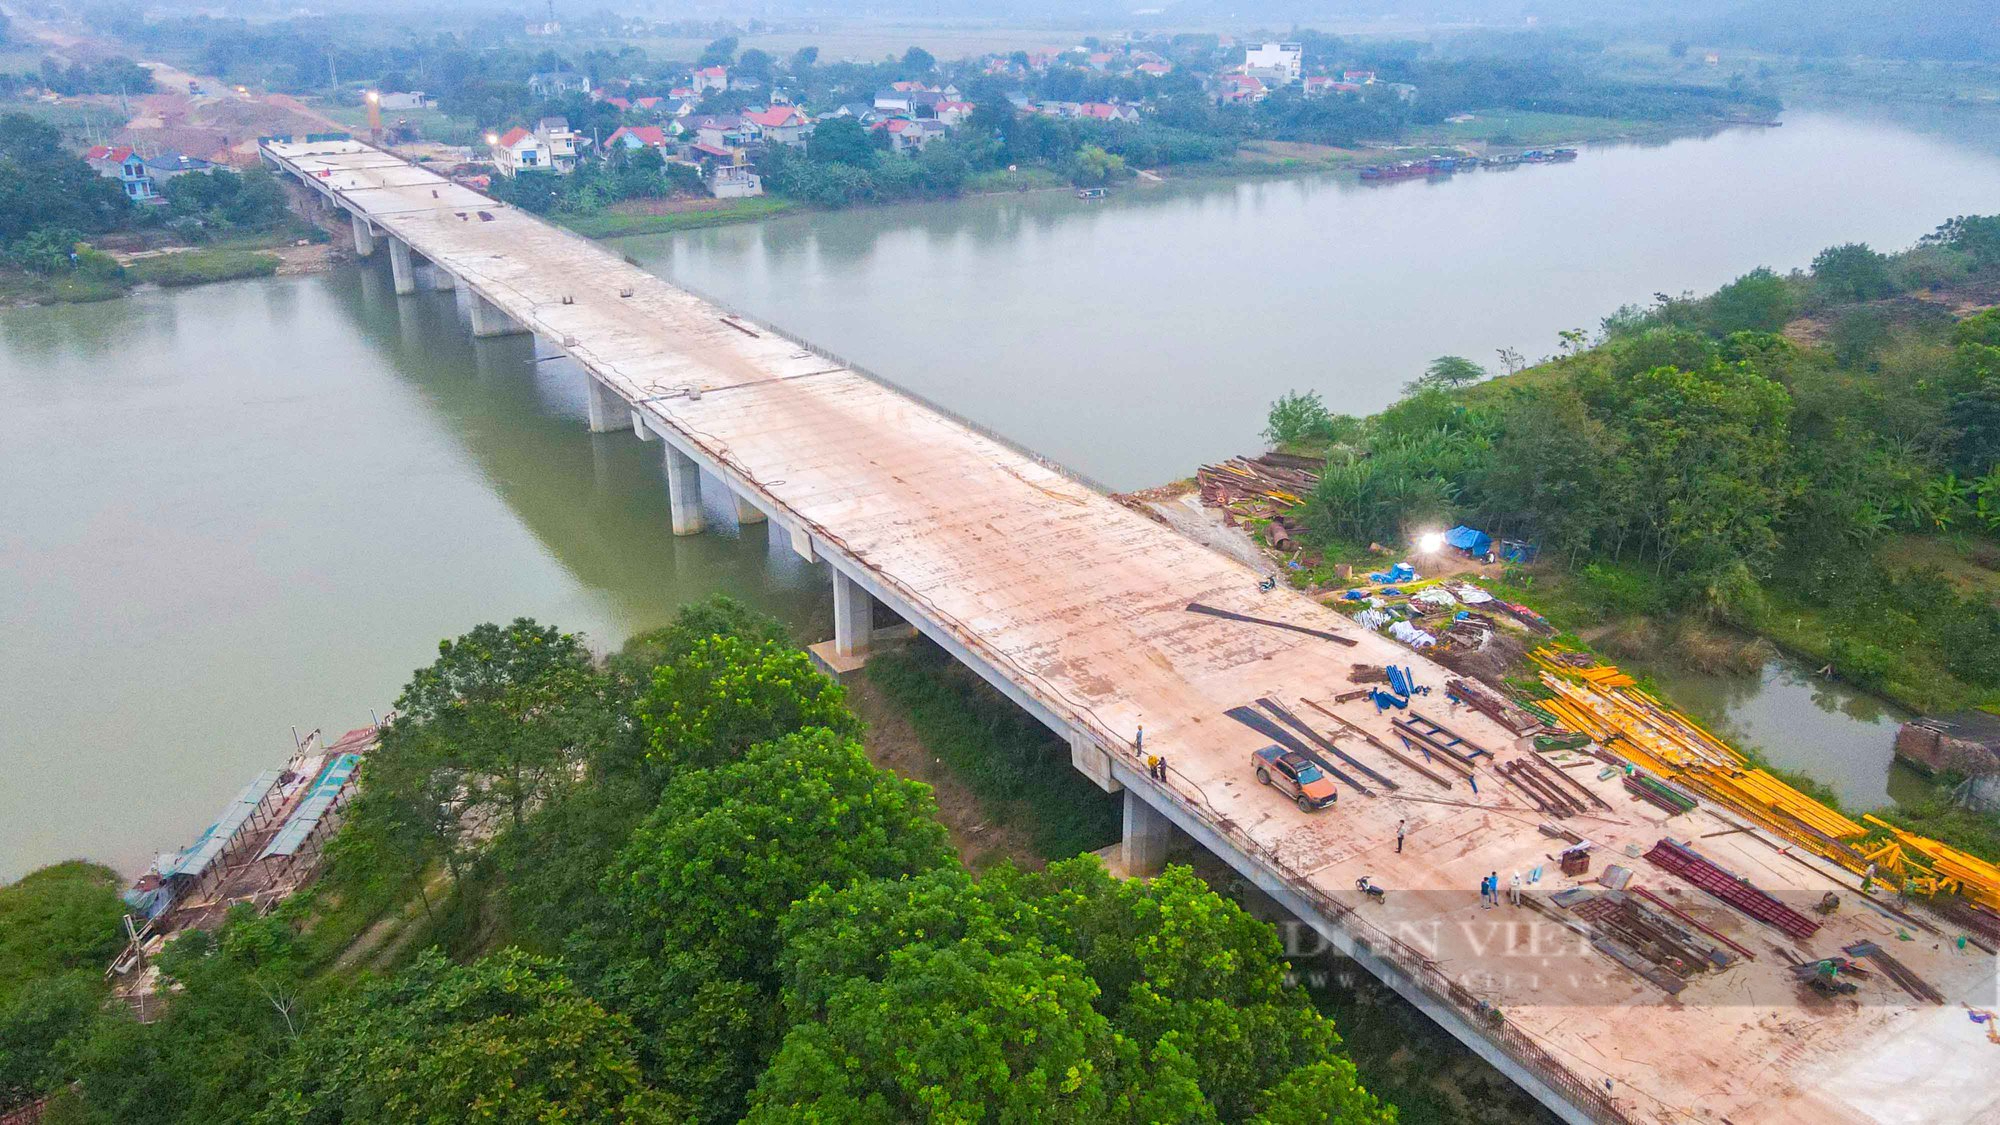 Hình hài cây cầu trăm tỷ vượt sông Mê Việt Linh trên tuyến cao tốc Bắc - Nam chuẩn bị về đích - Ảnh 2.